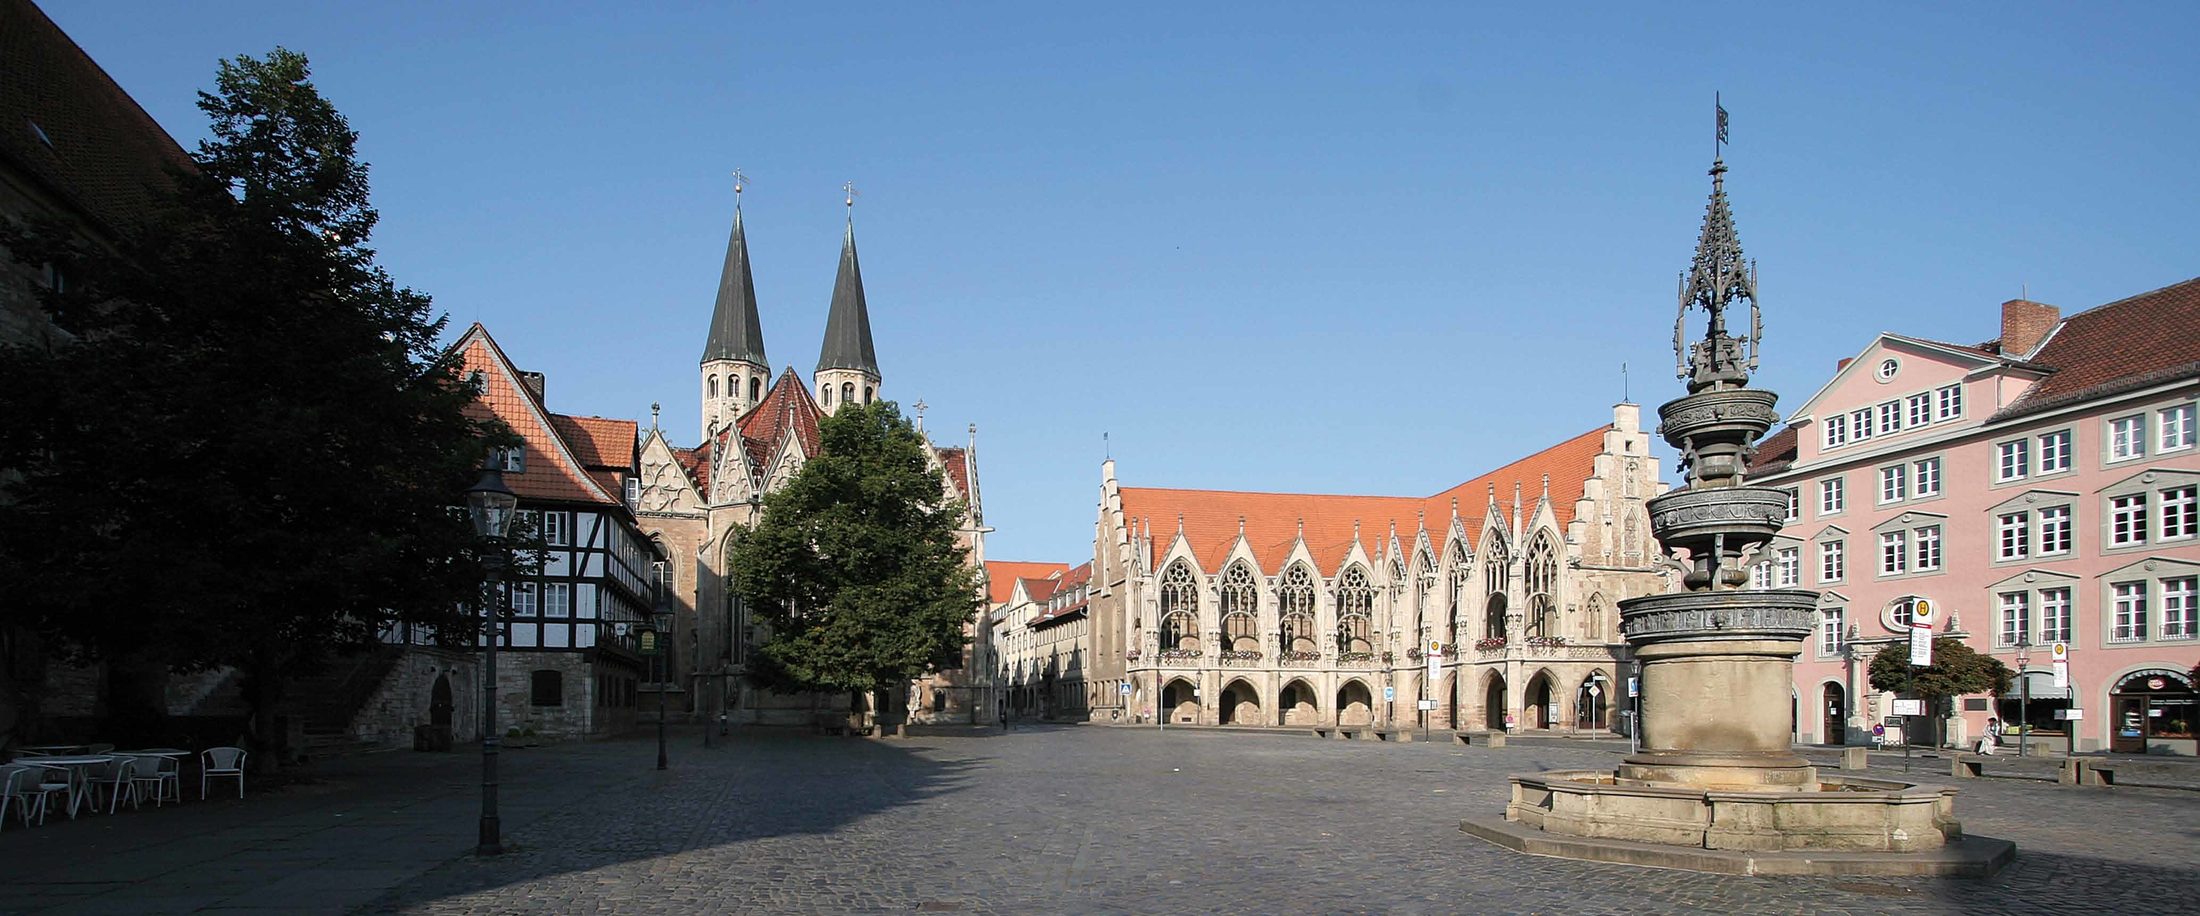 Der Altstadtmarkt – seit dem Mittelalter bis heute ein Mittelpunkt des öffentlichen Lebens in Braunschweig. (Zoom on click)